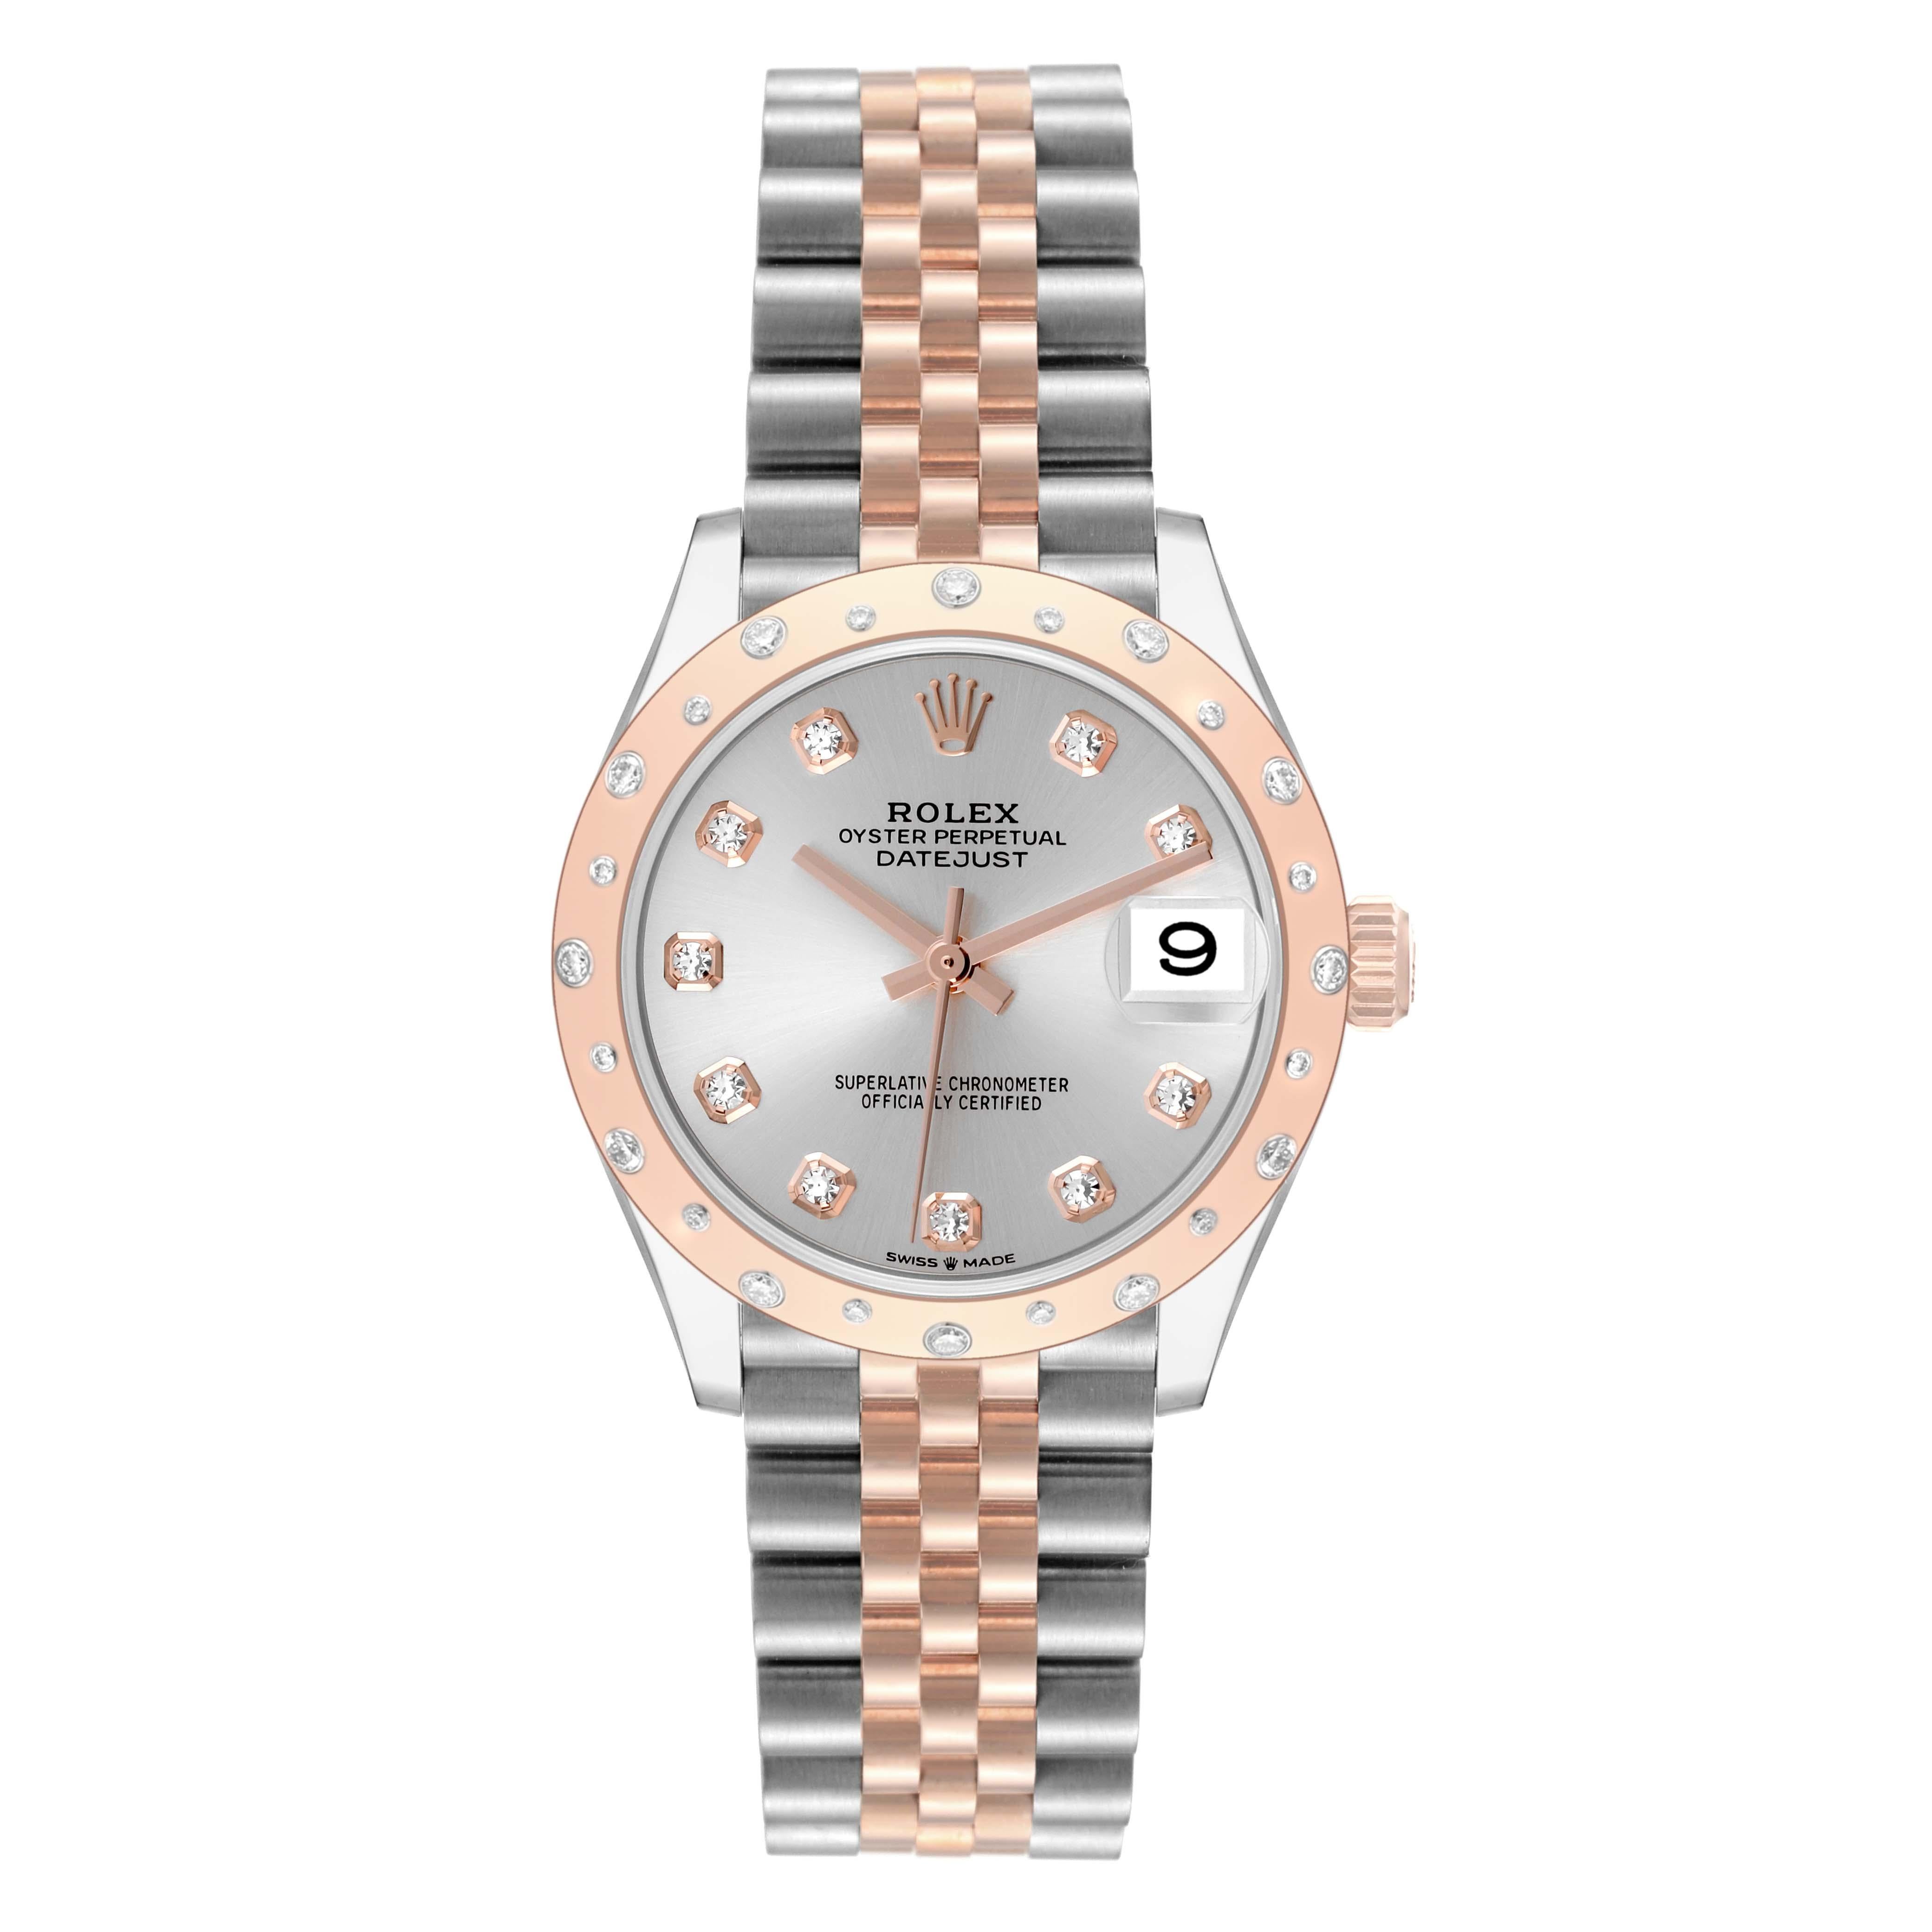 Rolex Datejust 31 Midsize Steel Rose Gold Diamond Ladies Watch 278341 Unworn. Mouvement à remontage automatique certifié officiellement chronomètre avec fonction de date rapide. Boîtier oyster en acier inoxydable de 31.0 mm de diamètre. Logo Rolex